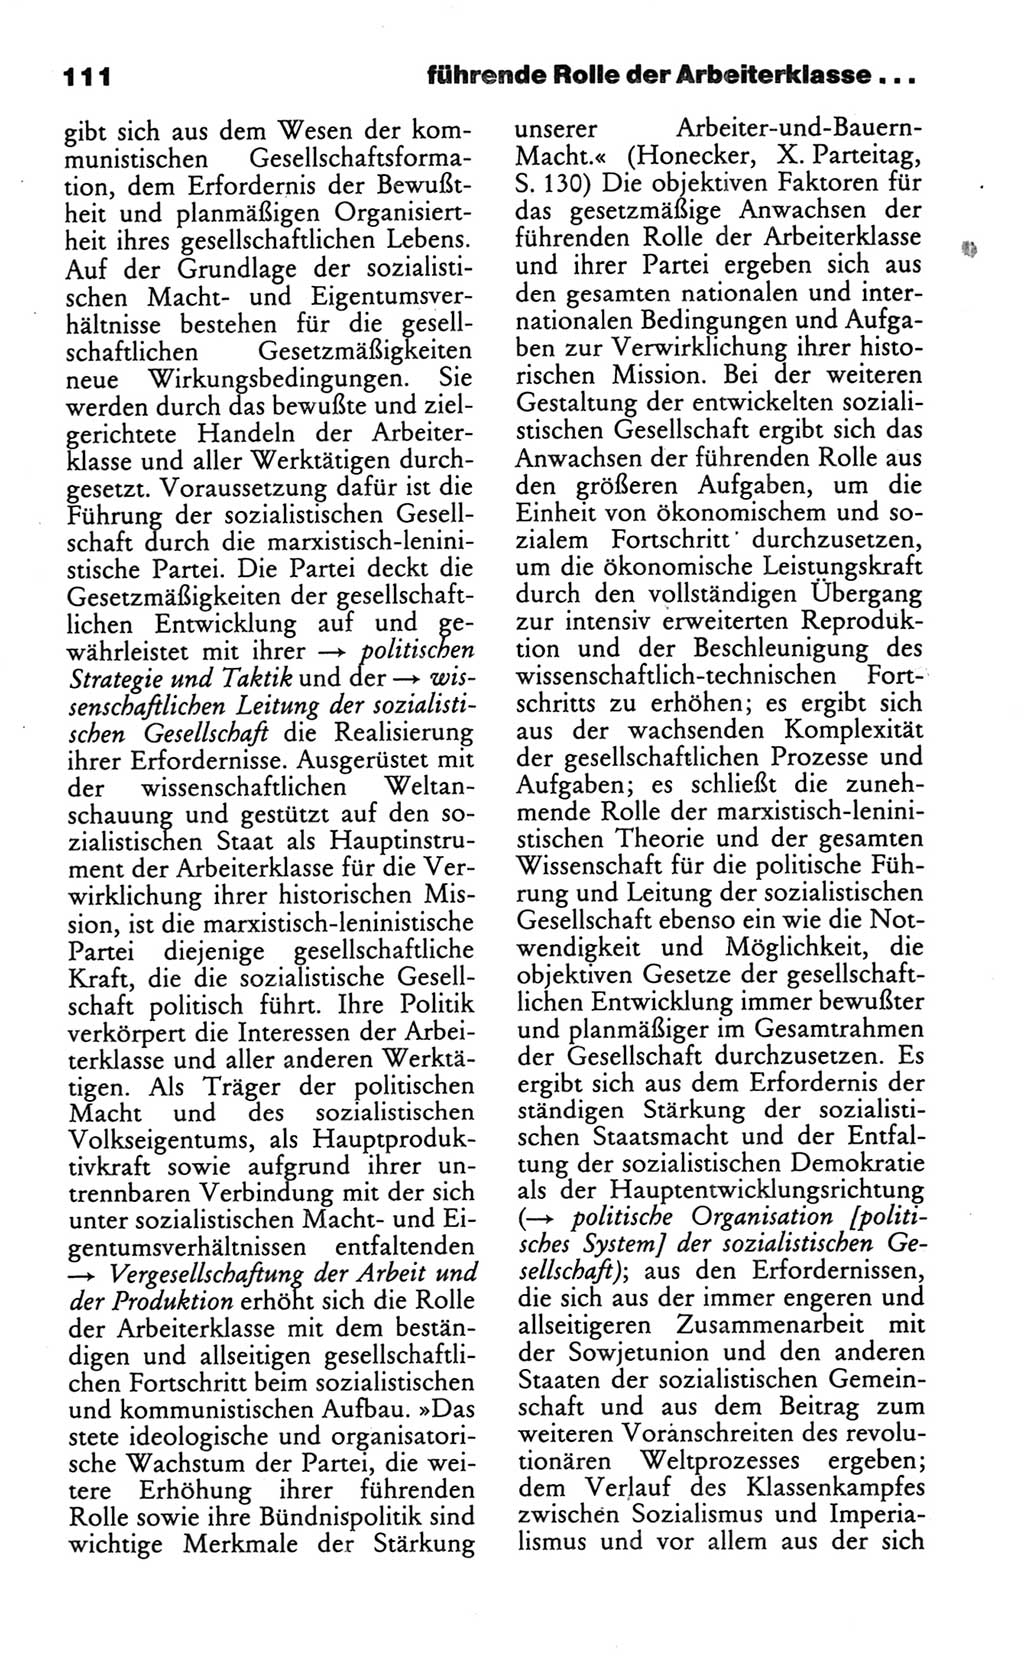 Wörterbuch des wissenschaftlichen Kommunismus [Deutsche Demokratische Republik (DDR)] 1986, Seite 111 (Wb. wiss. Komm. DDR 1986, S. 111)